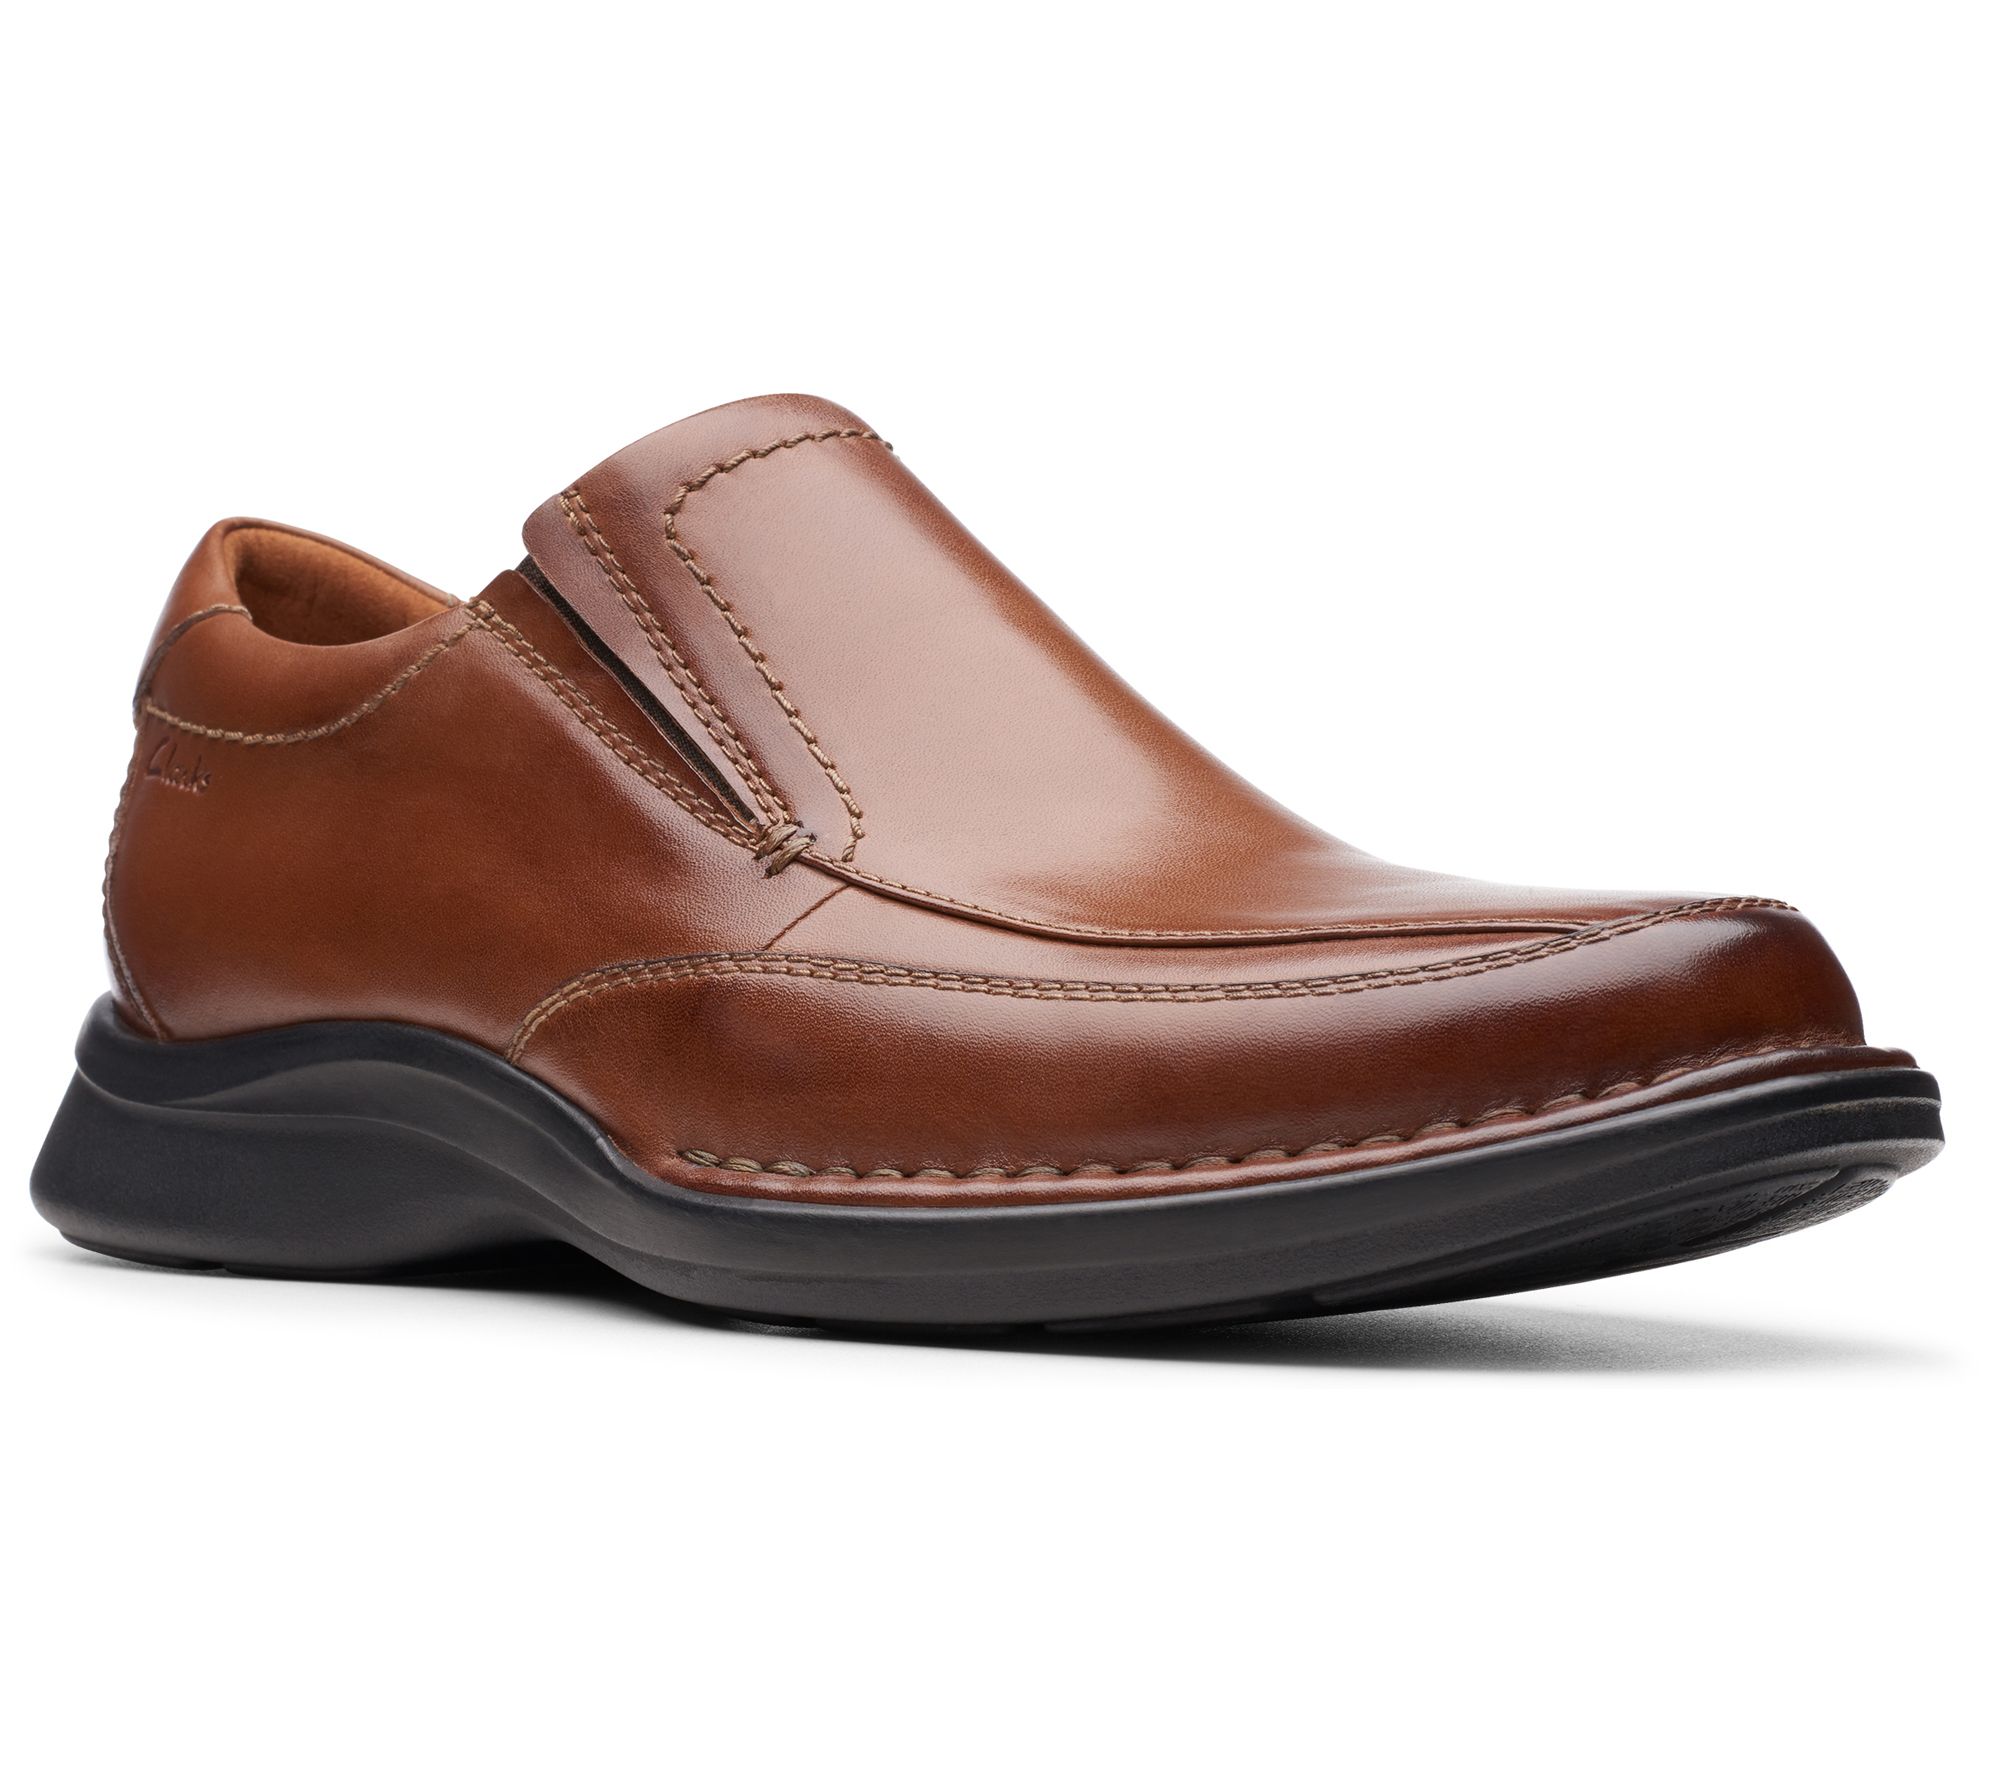 Clarks Shoes Slip On Zealand, SAVE 51% motorhomevoyager.co.uk